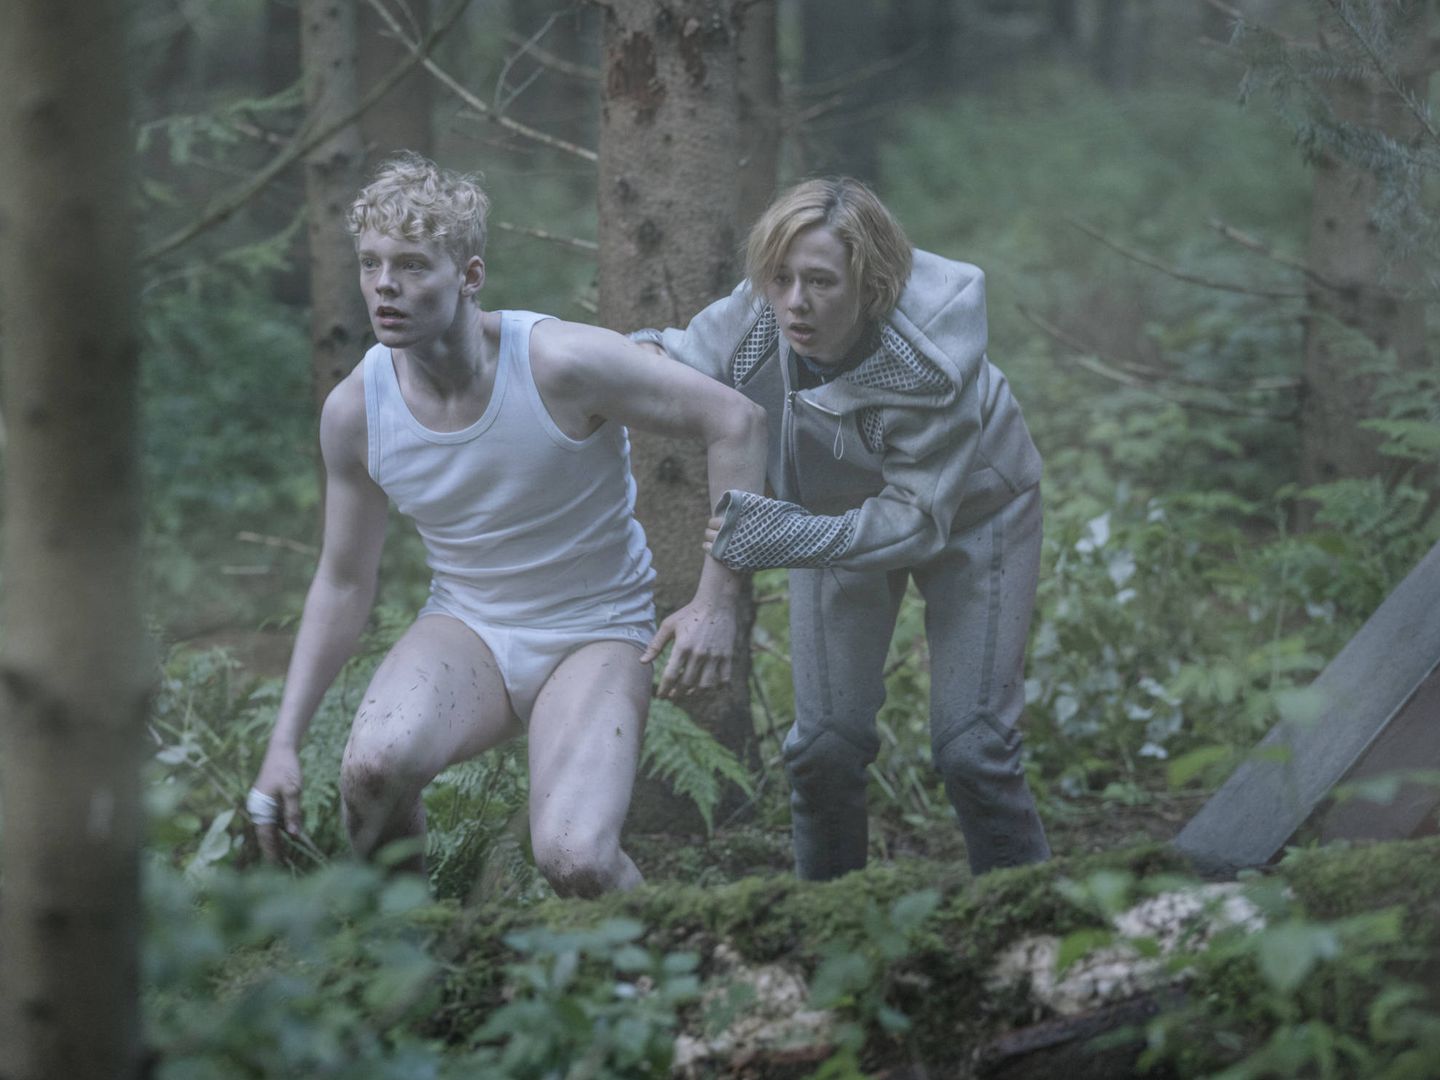 Los hermanos protagonistas, Rasmus y Simone, tras verse forzados a abandonar el búnker. (Netflix)